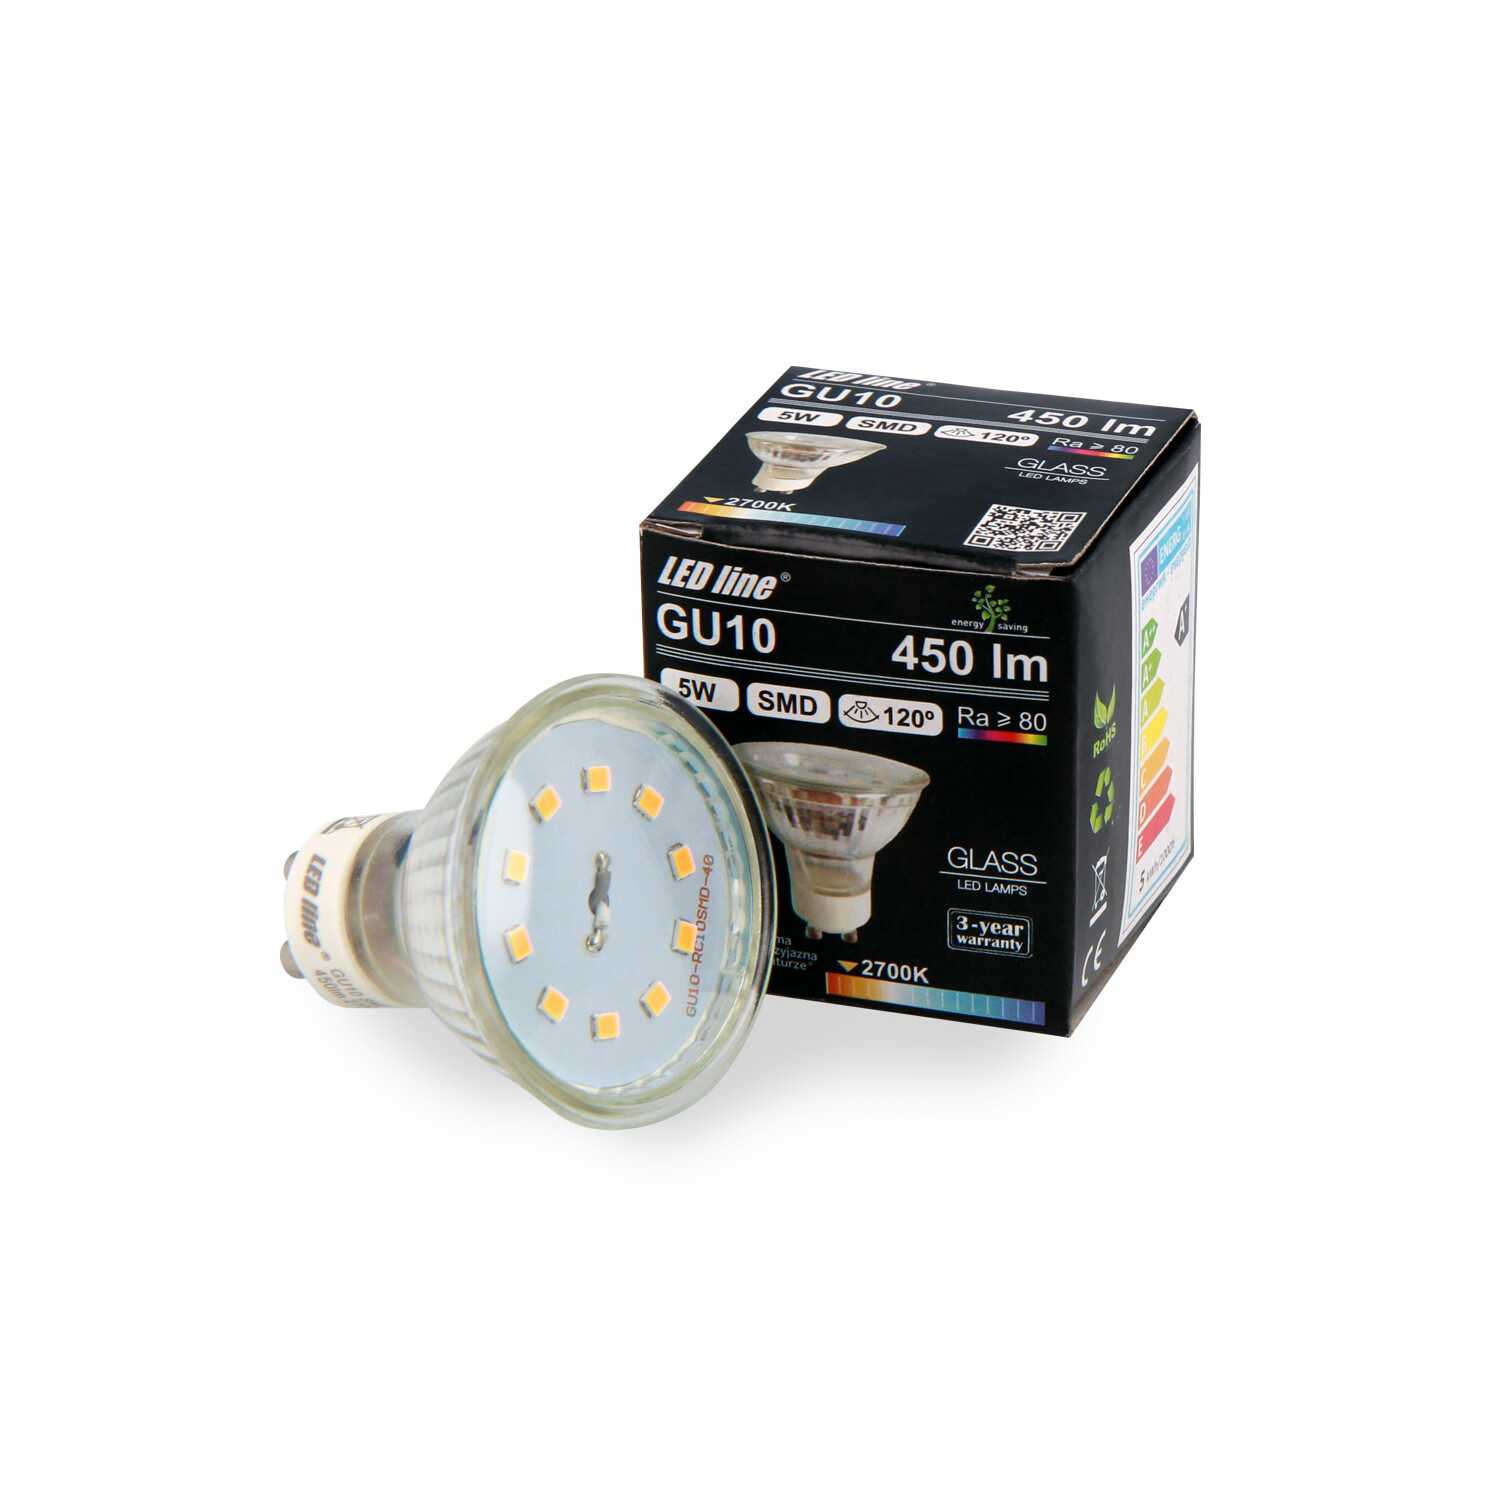 LED LINE 3x GU10 Leuchtmittel LED Warmweiß 450 Lumen 5W